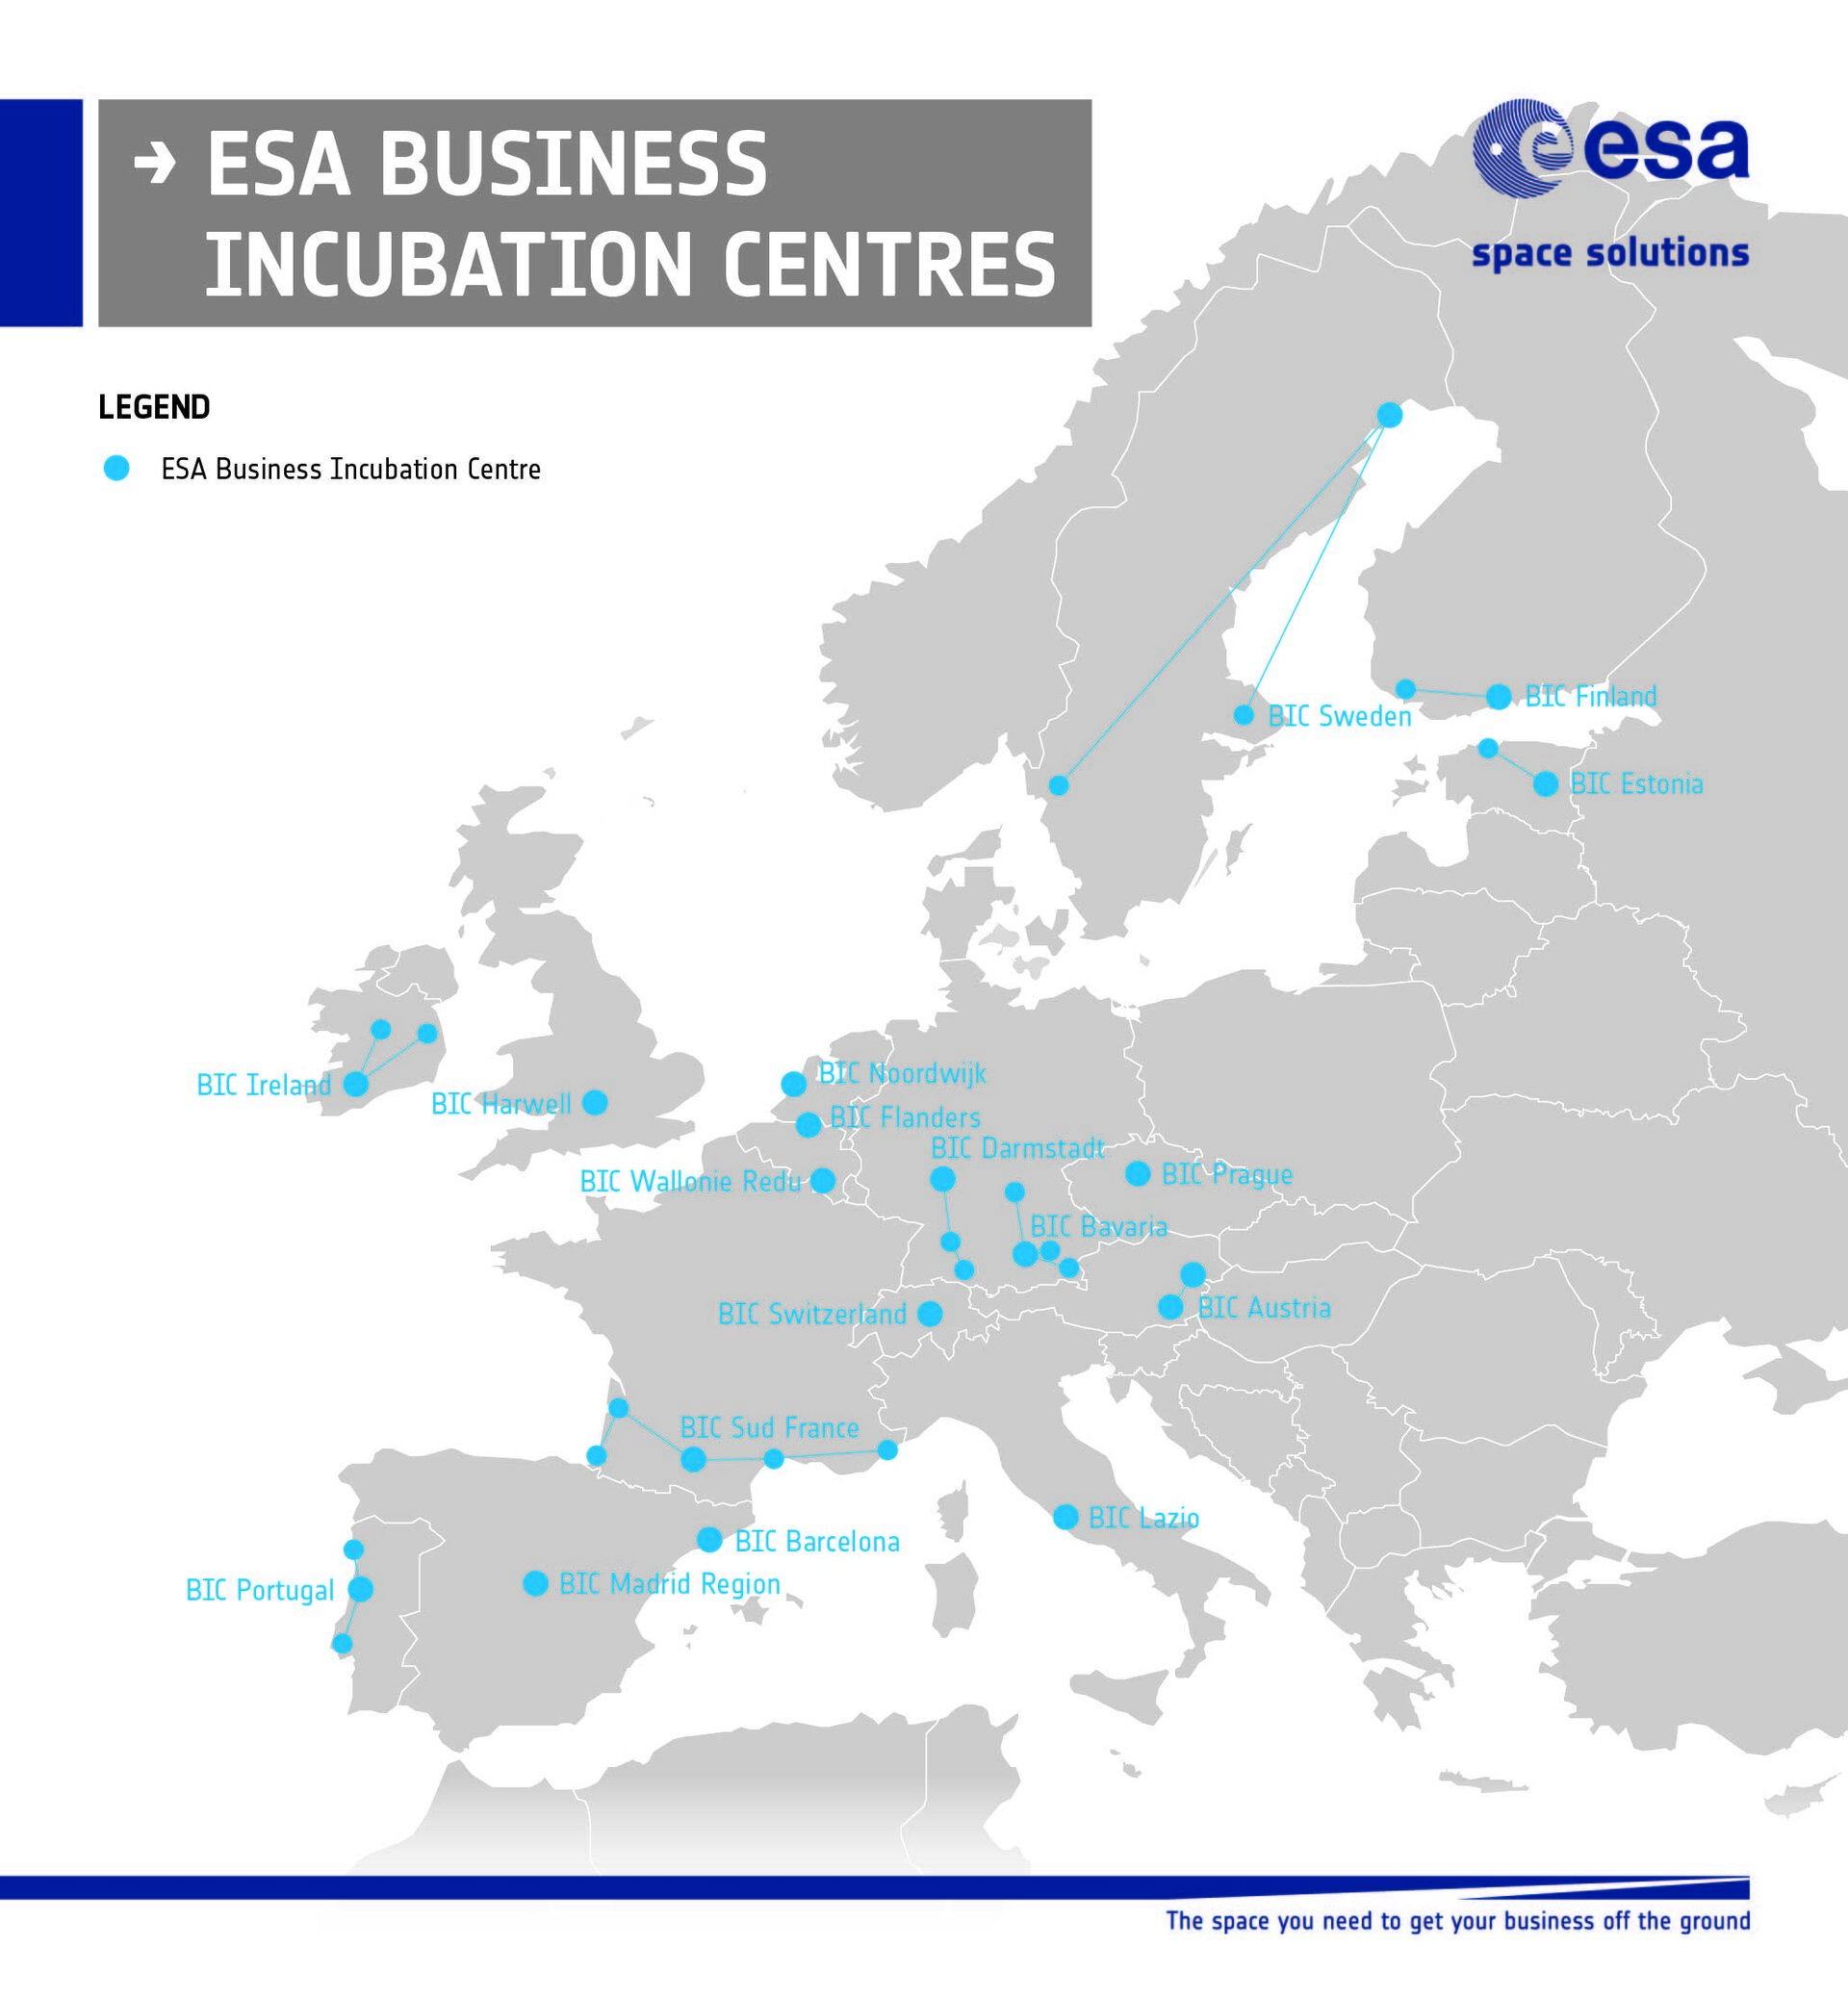 ESA BICs